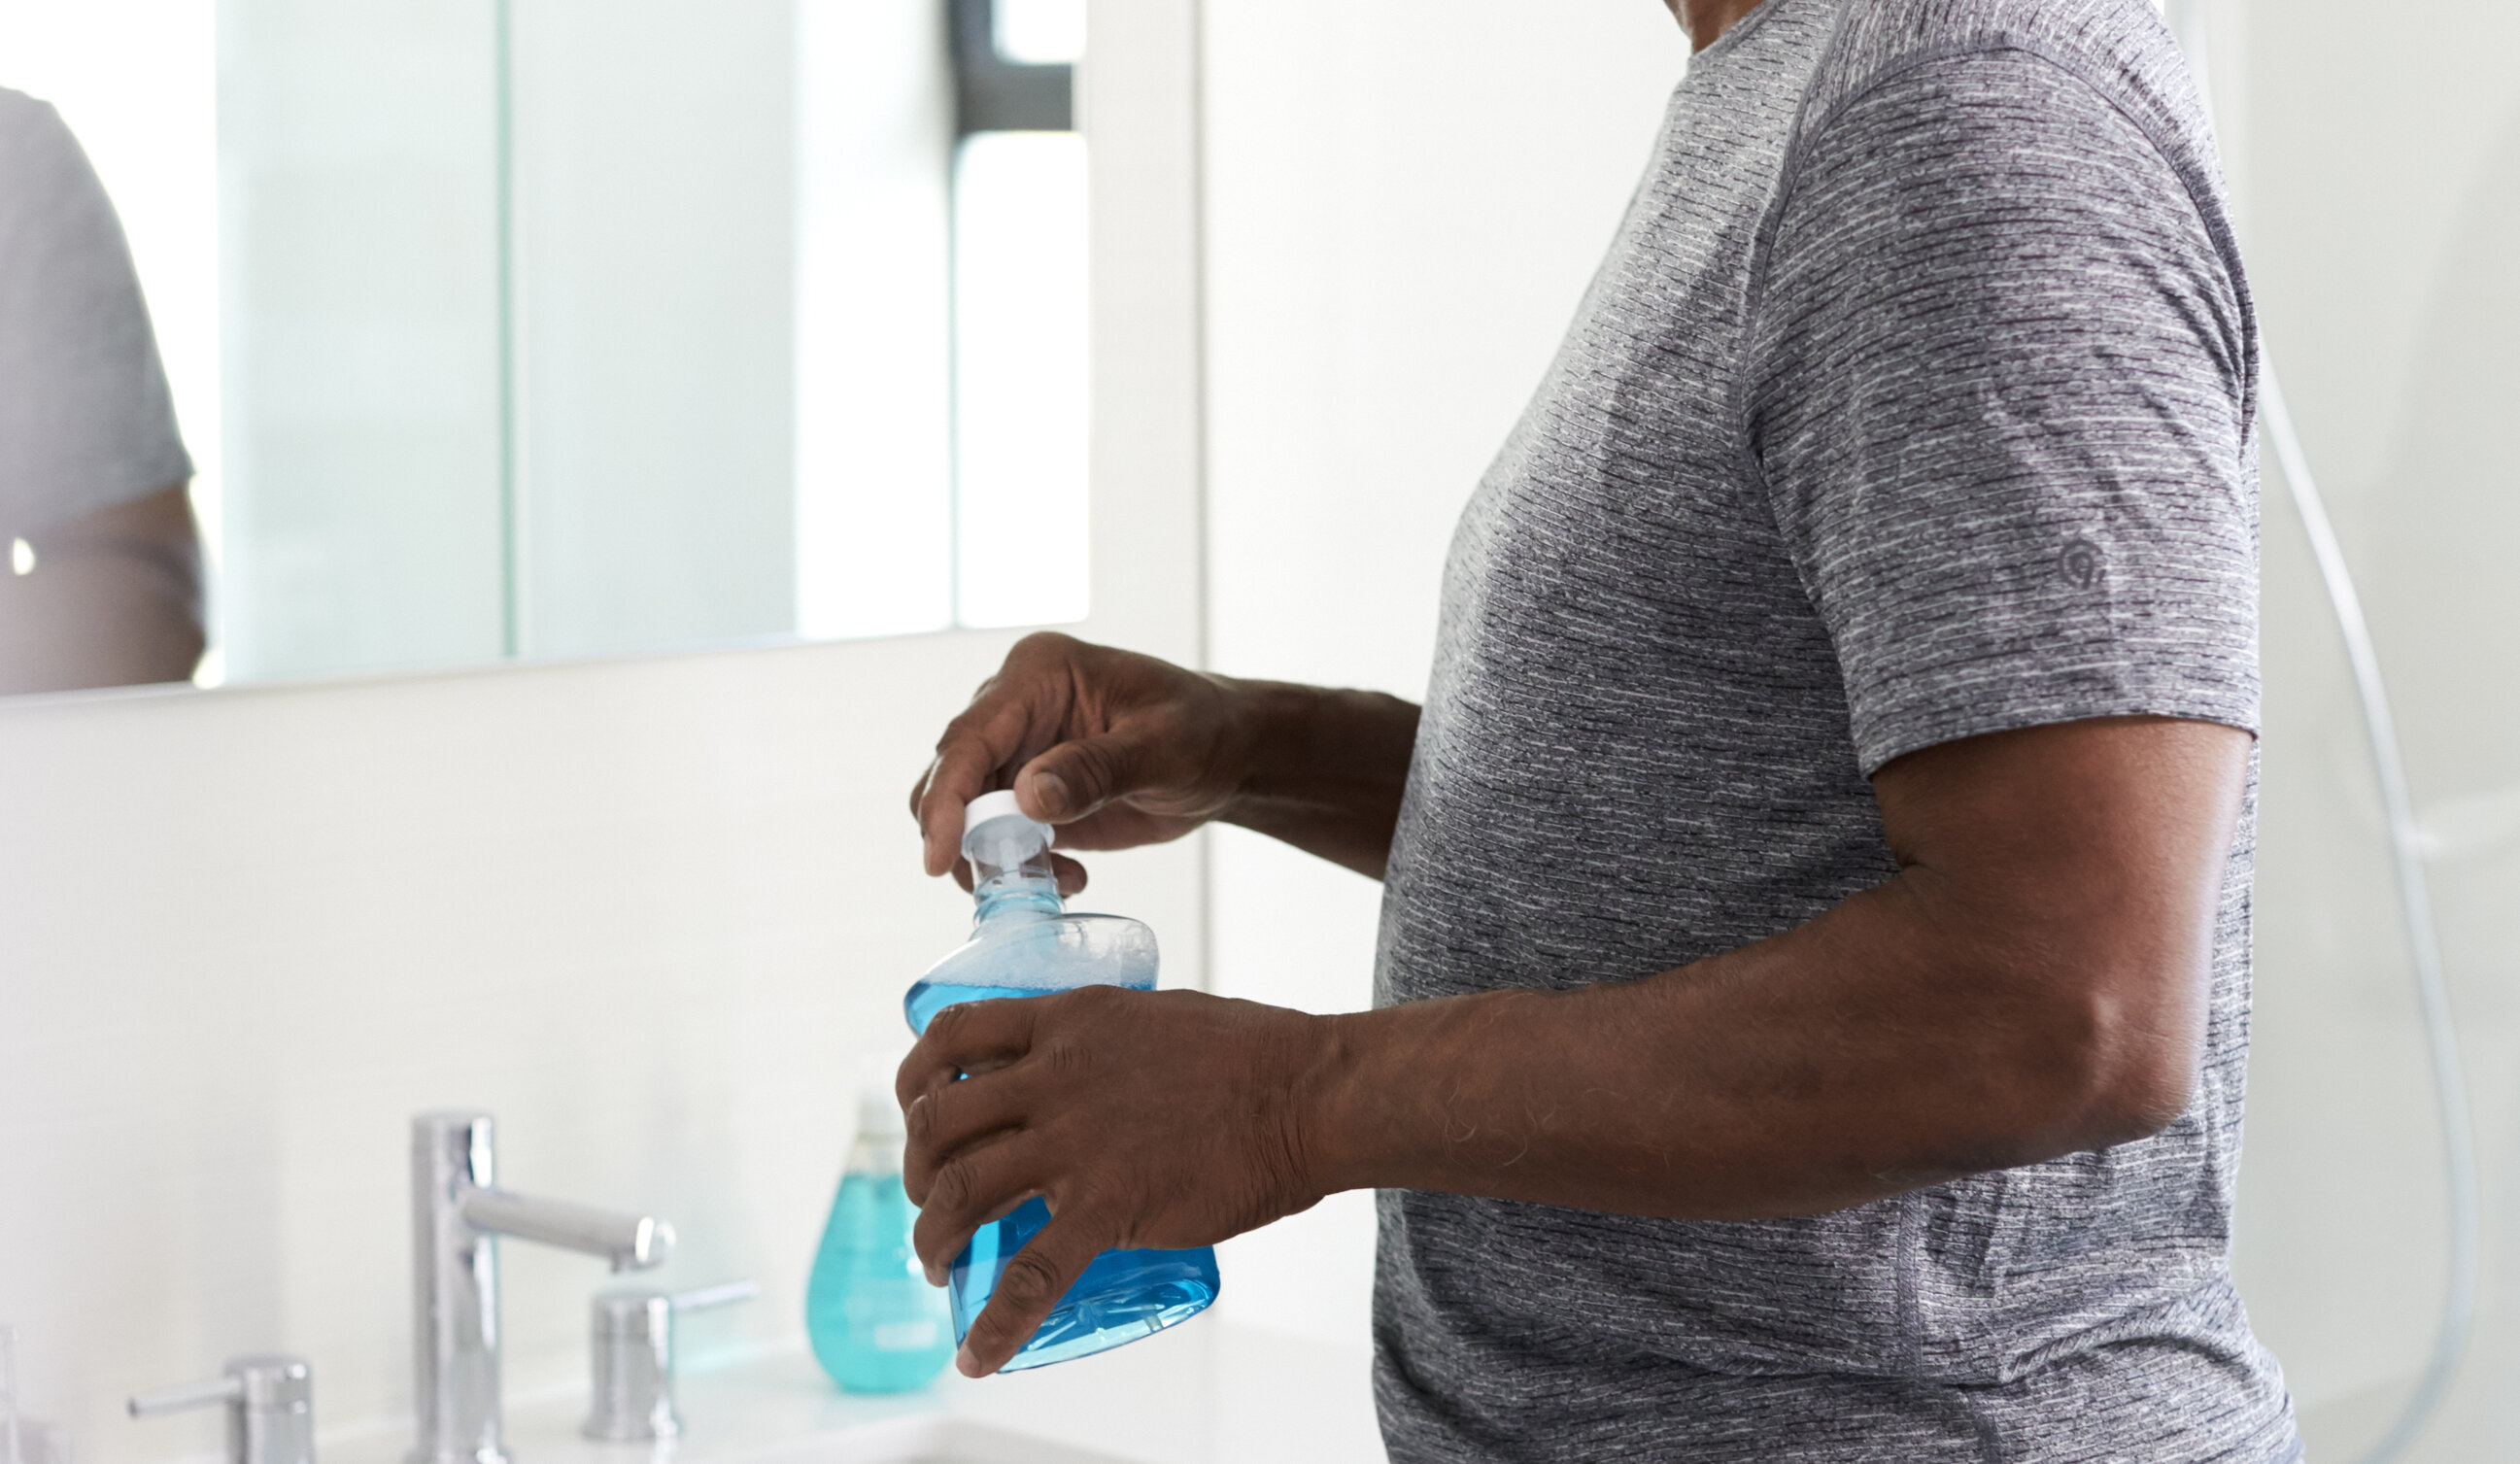 Apa de gură și soluțiile de spălare nazală neutralizează coronavirusul, potrivit unor studii realizate în SUA și Germania